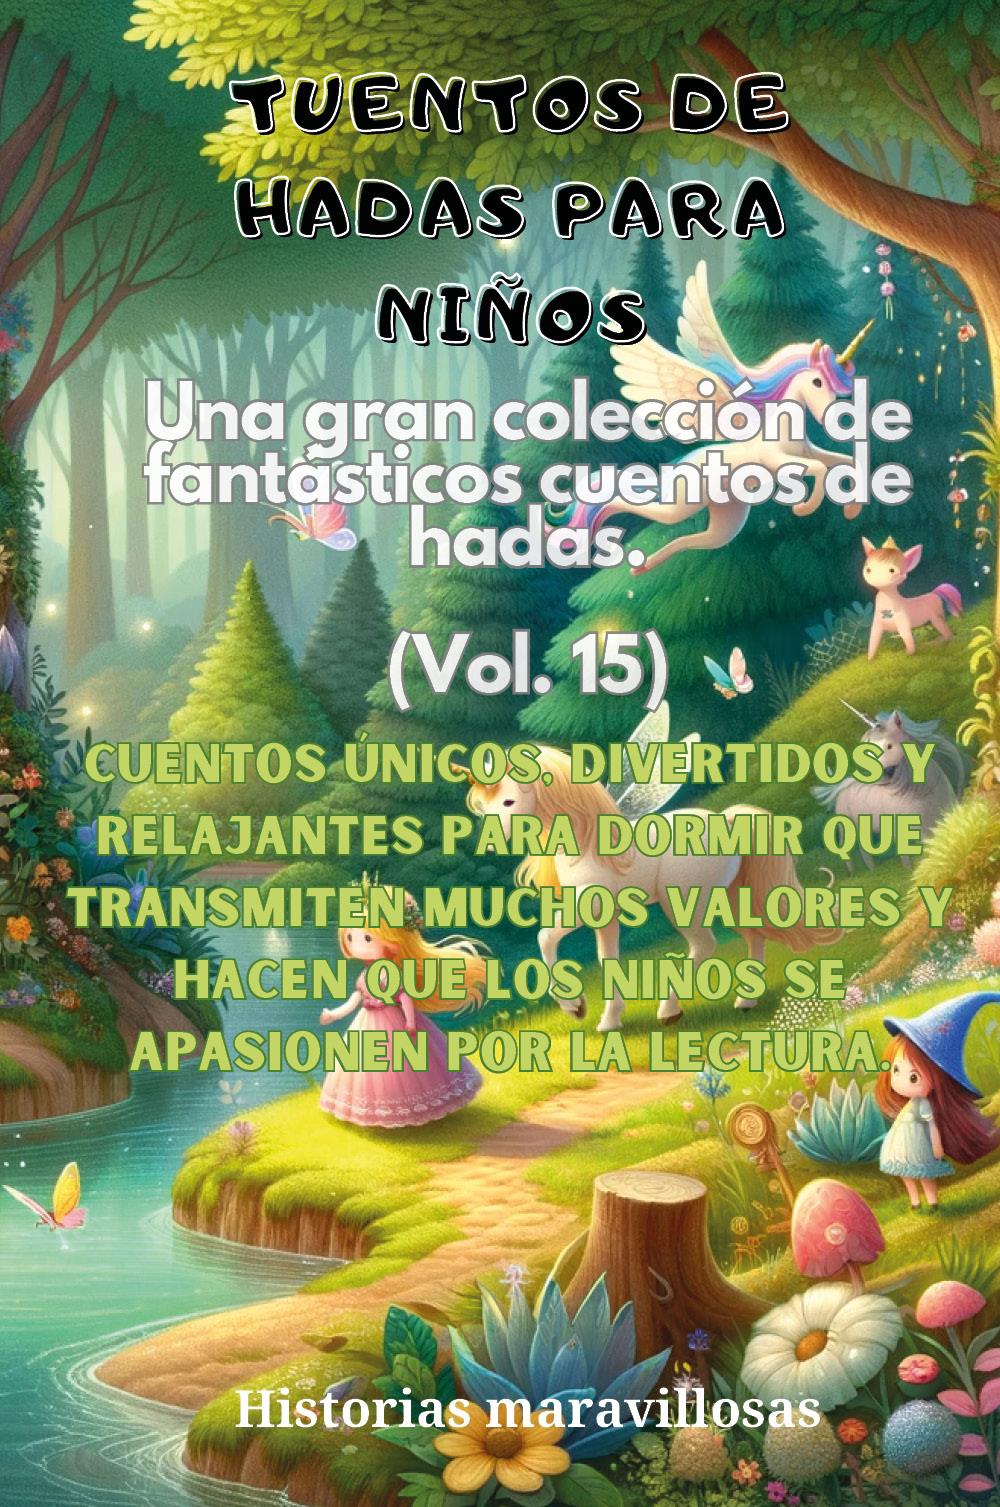 Fábulas para niños Una gran colección de fantásticas fábulas y cuentos de hadas. (Vol.15)